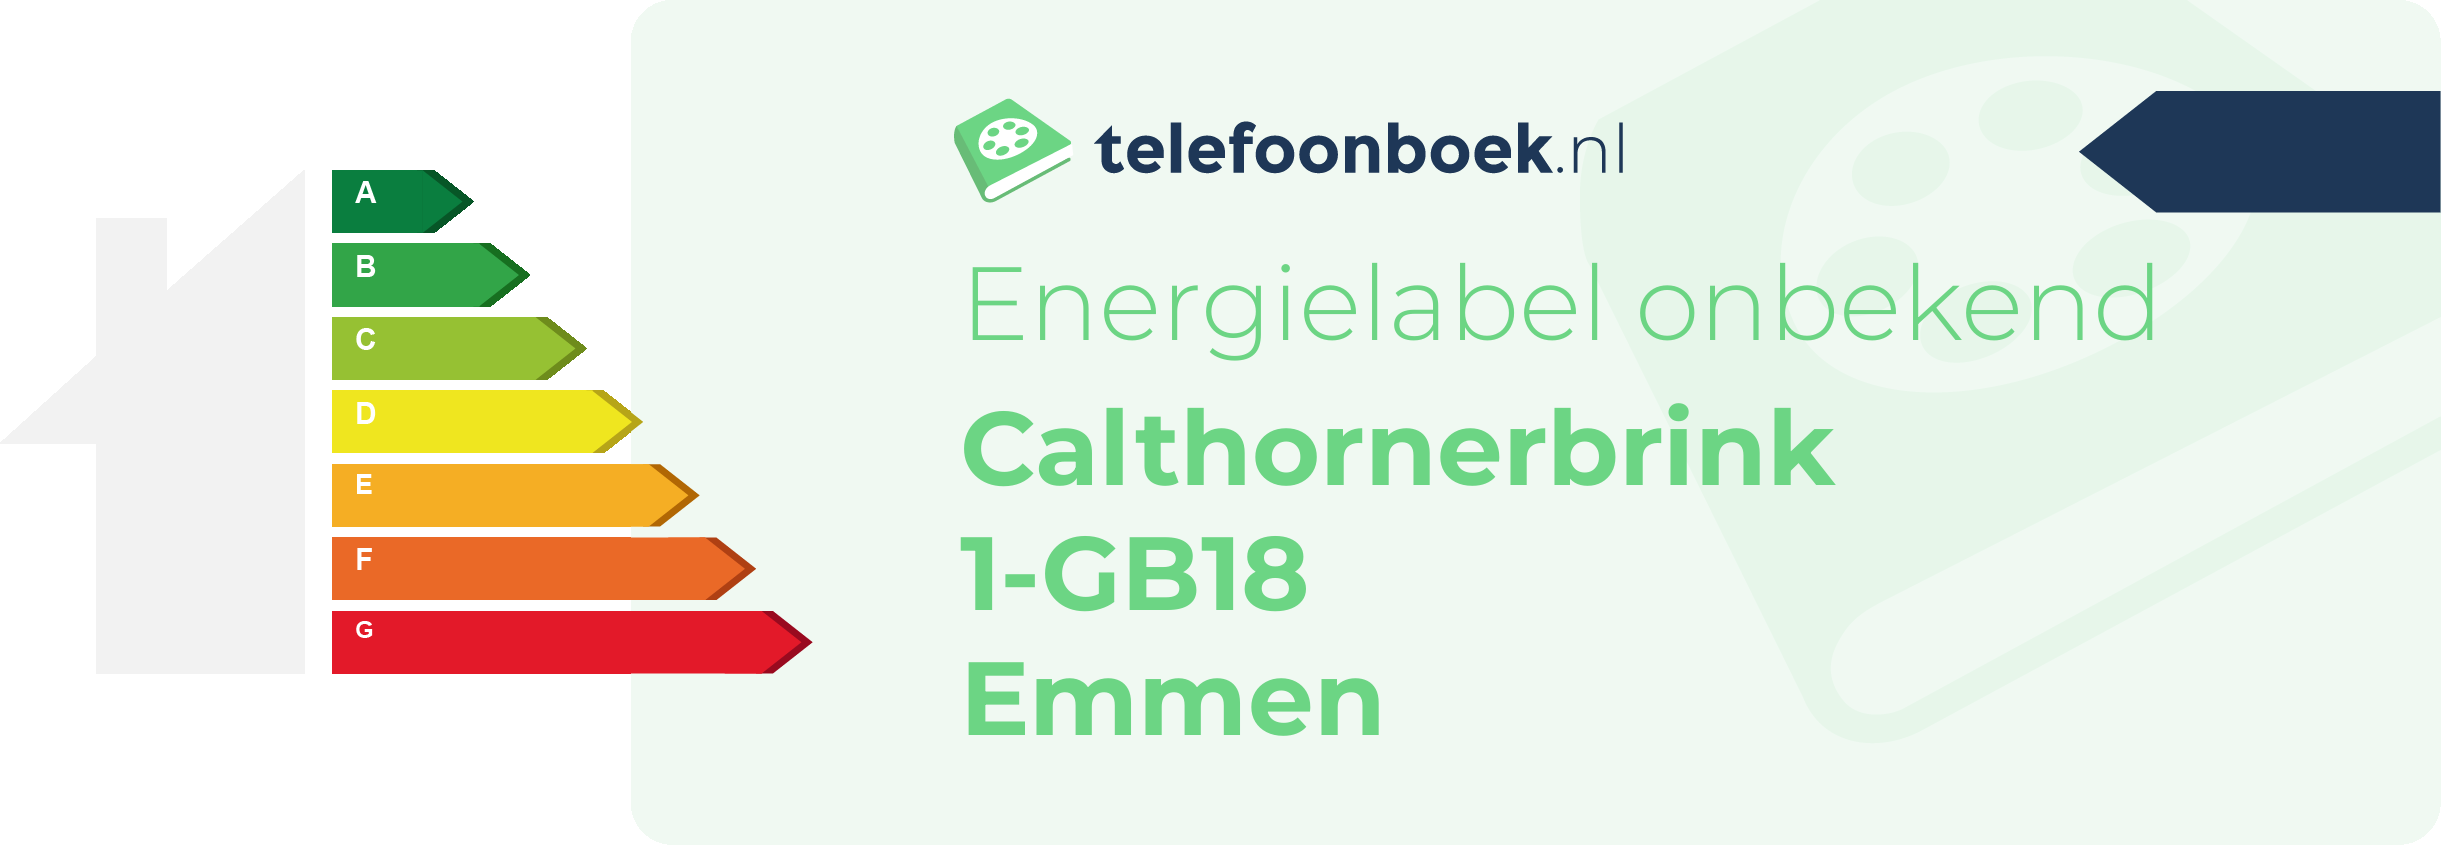 Energielabel Calthornerbrink 1-GB18 Emmen